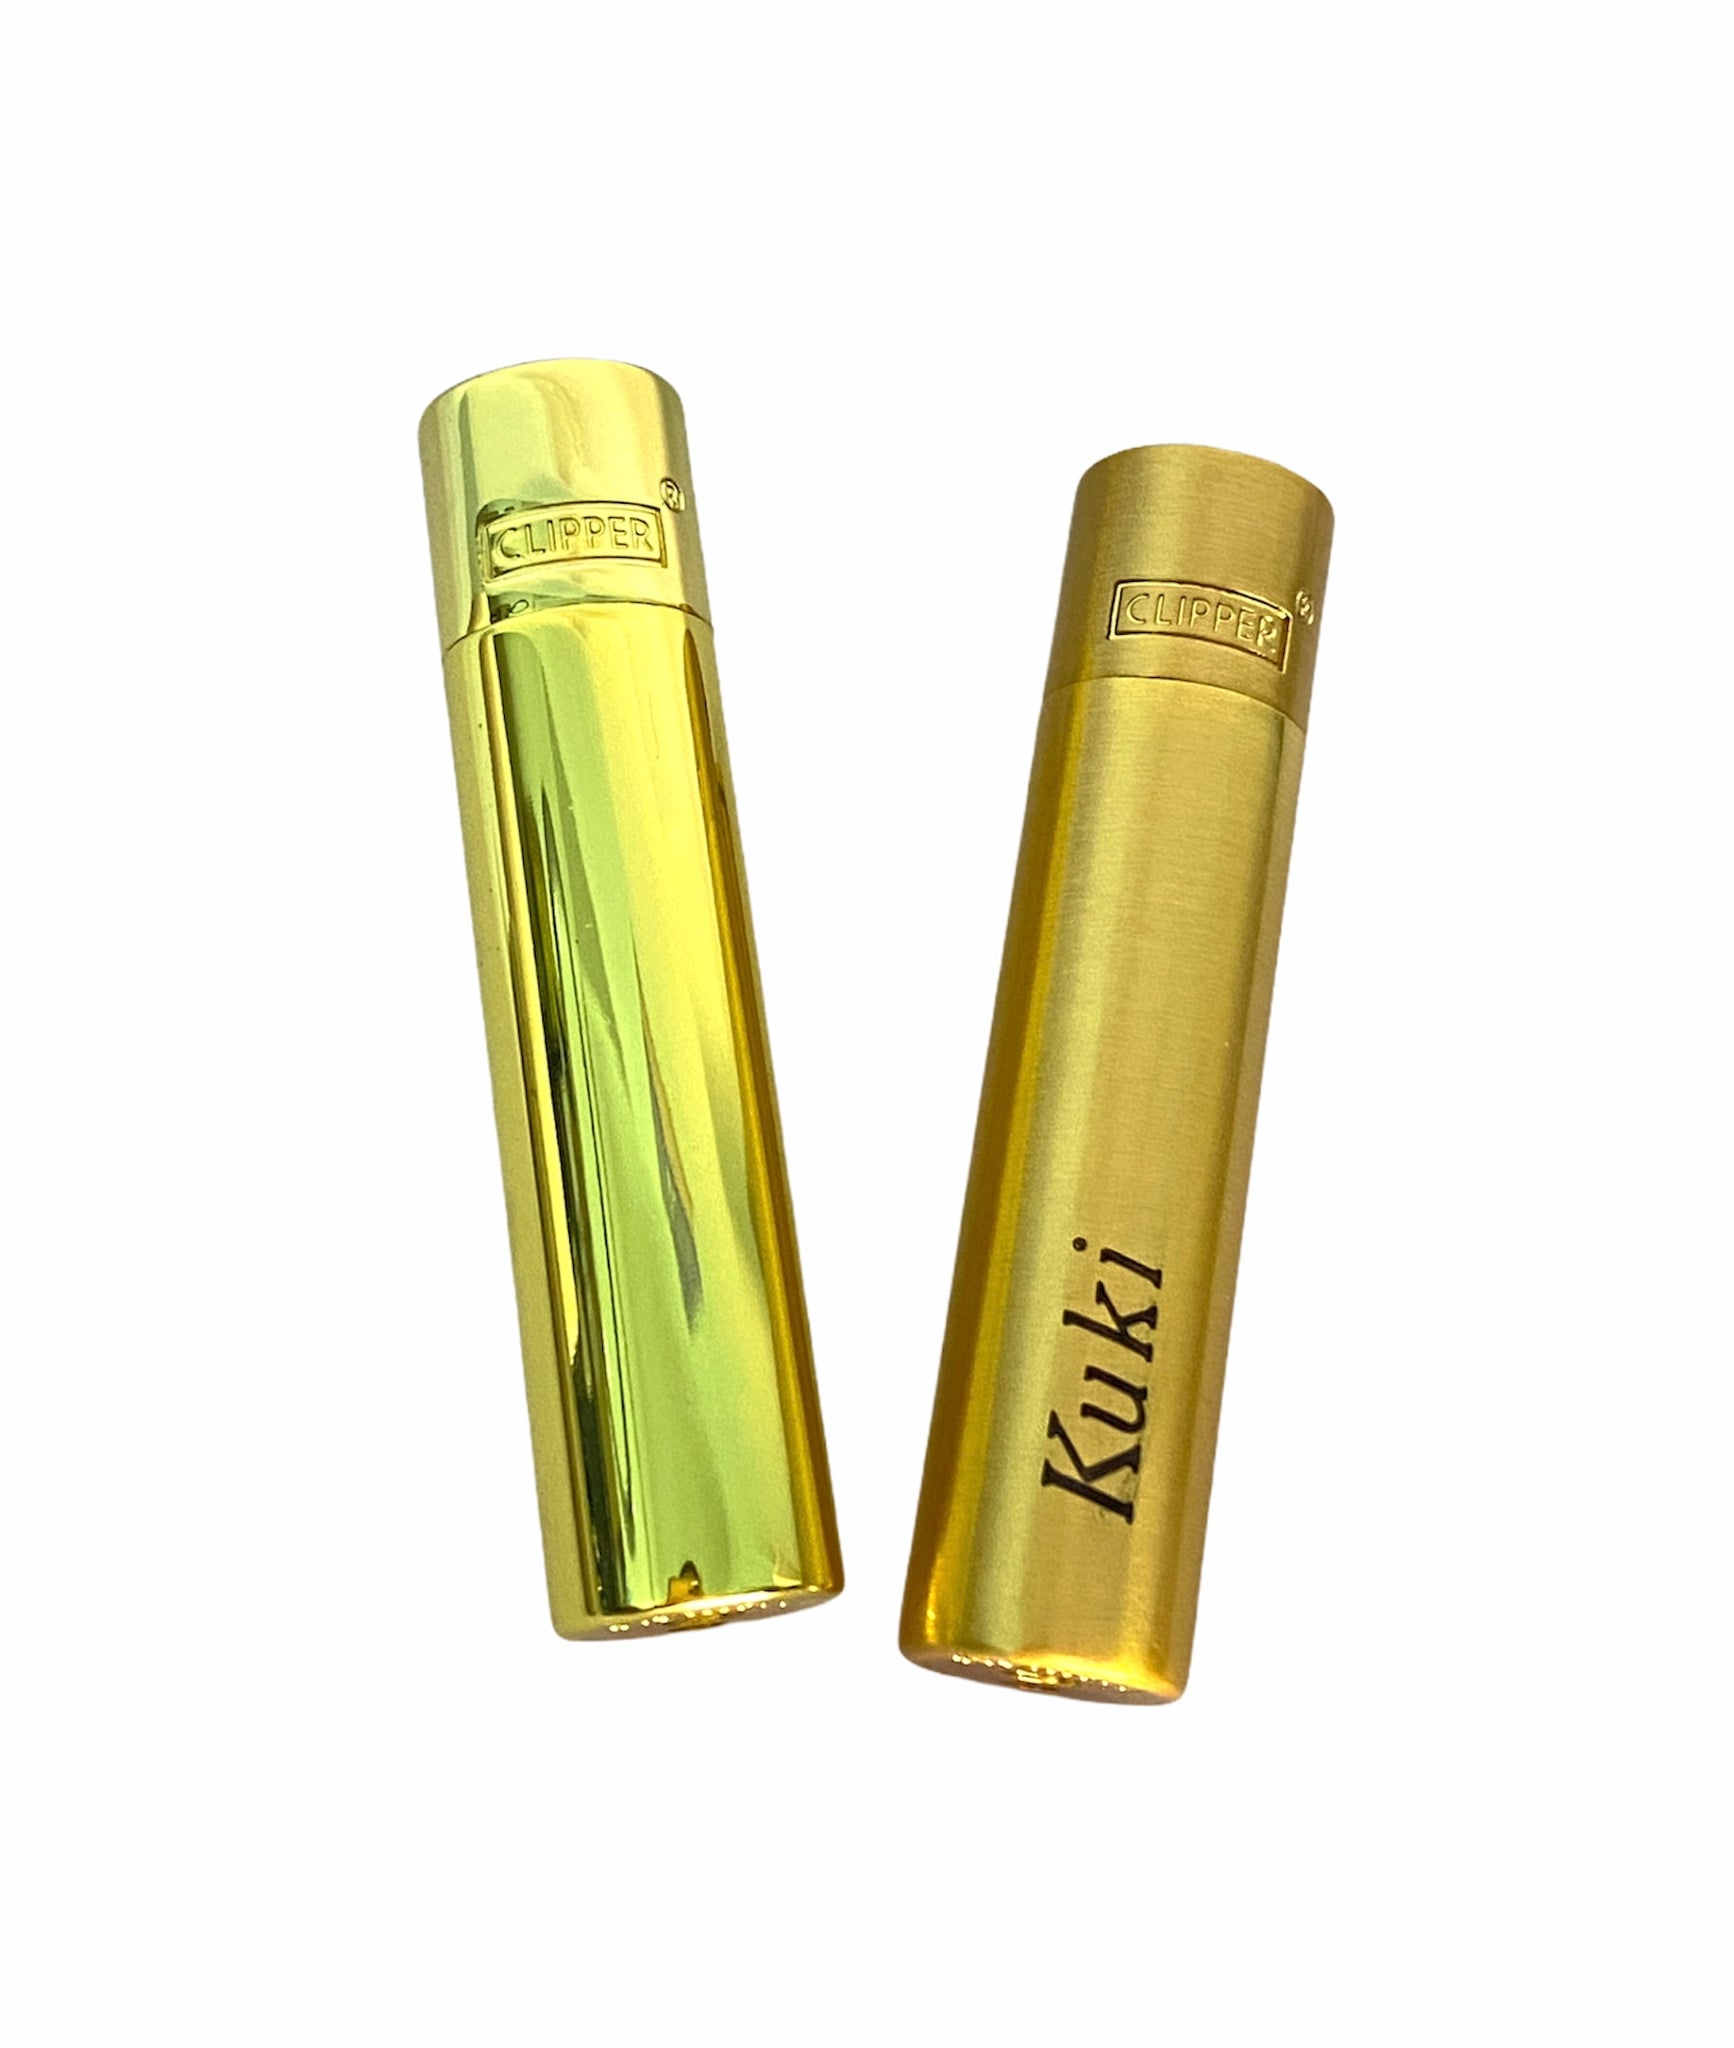 Accendino clipper personalizzato gold – Mon Bijou